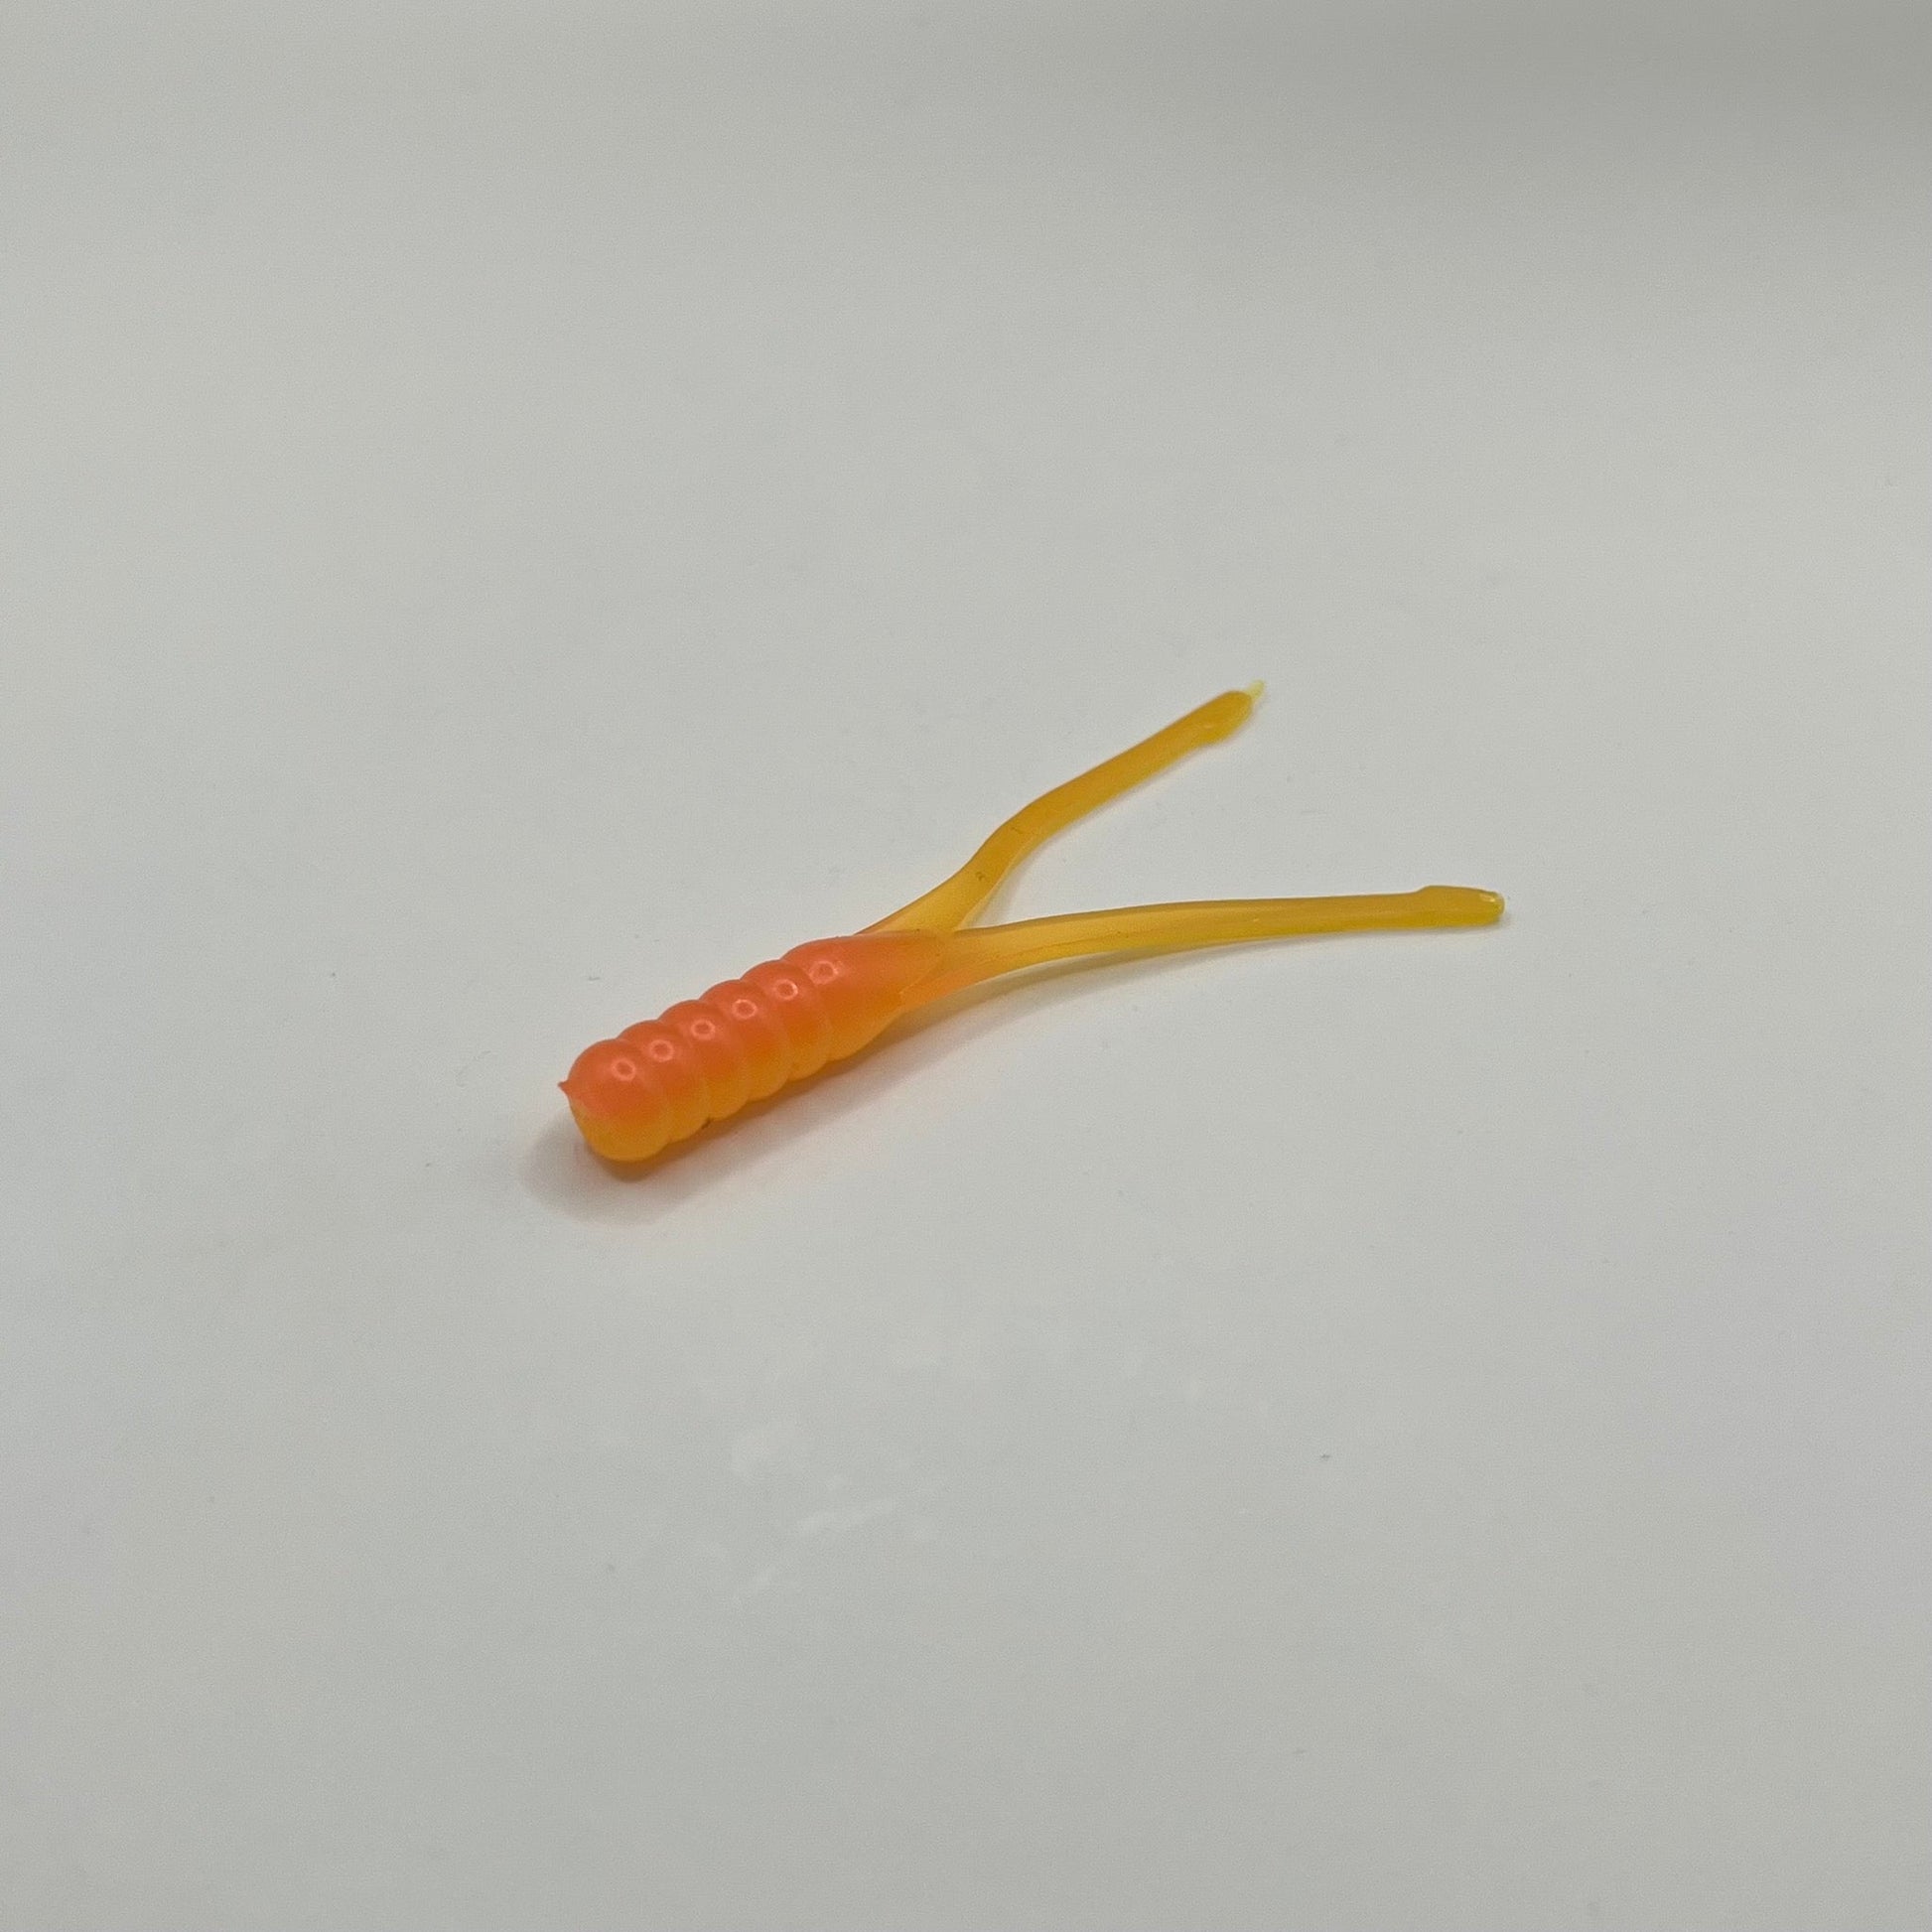 Lemonade Beetle Bug 2.25" - Premium Soft Plastic Lure from JAC’D Bait Co - Shop now!